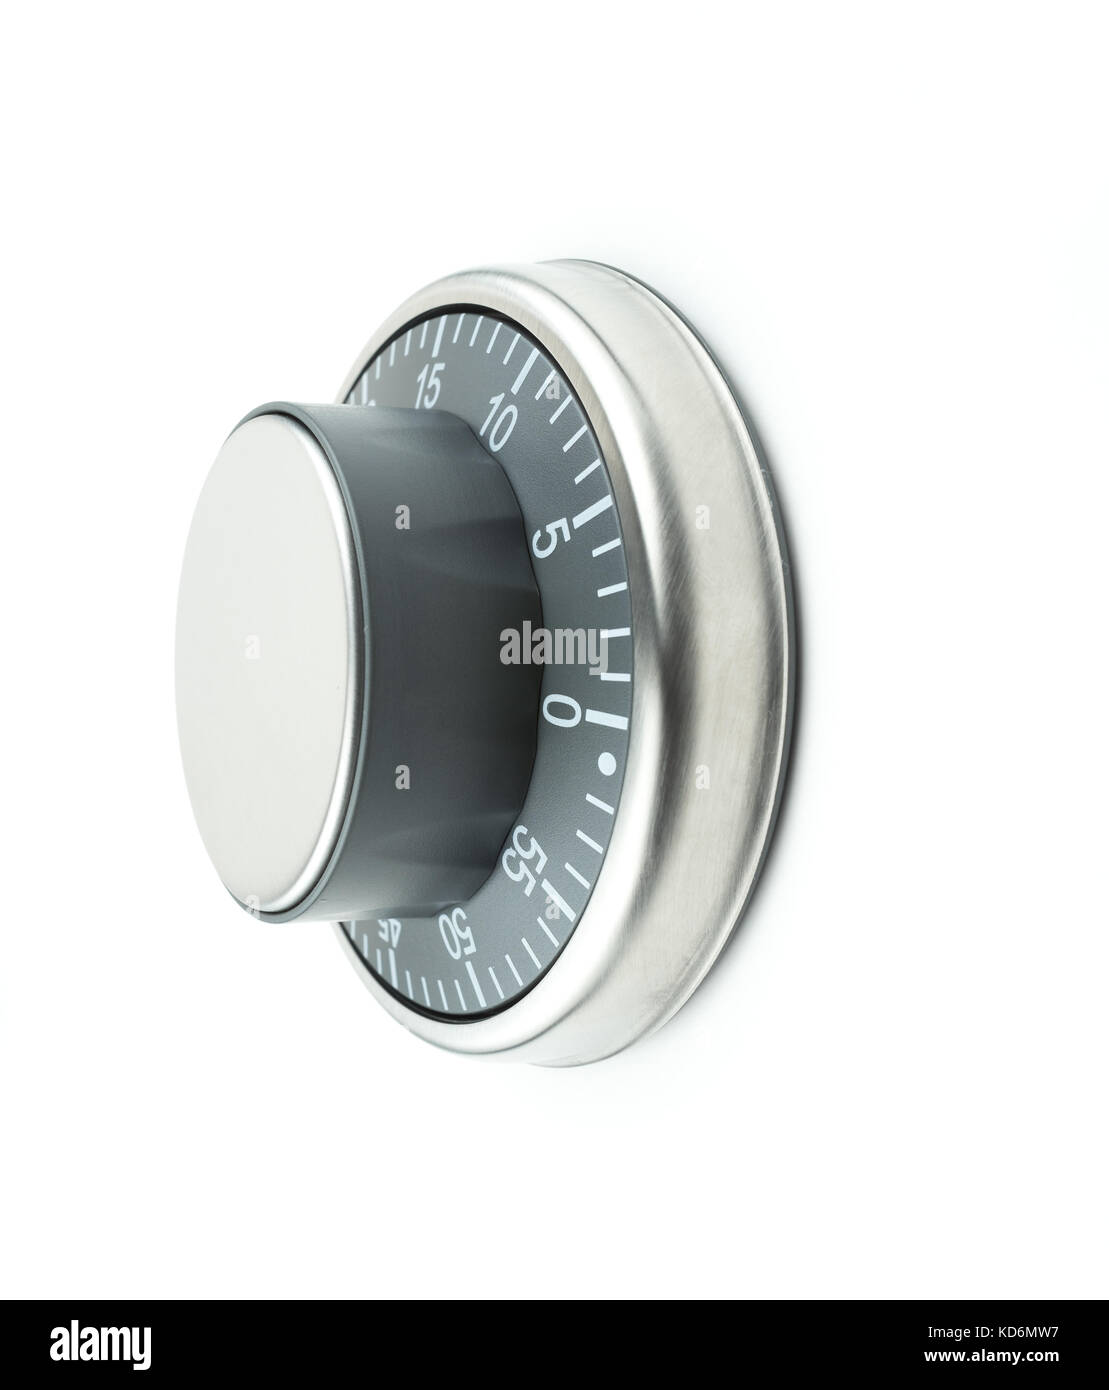 Temperaturregler/Wählen auf einem weißen Hintergrund. Mögliche Verwendung als Timer, Thermostat, Bank vault Combination Lock oder globale Erwärmung Konzept Stockfoto